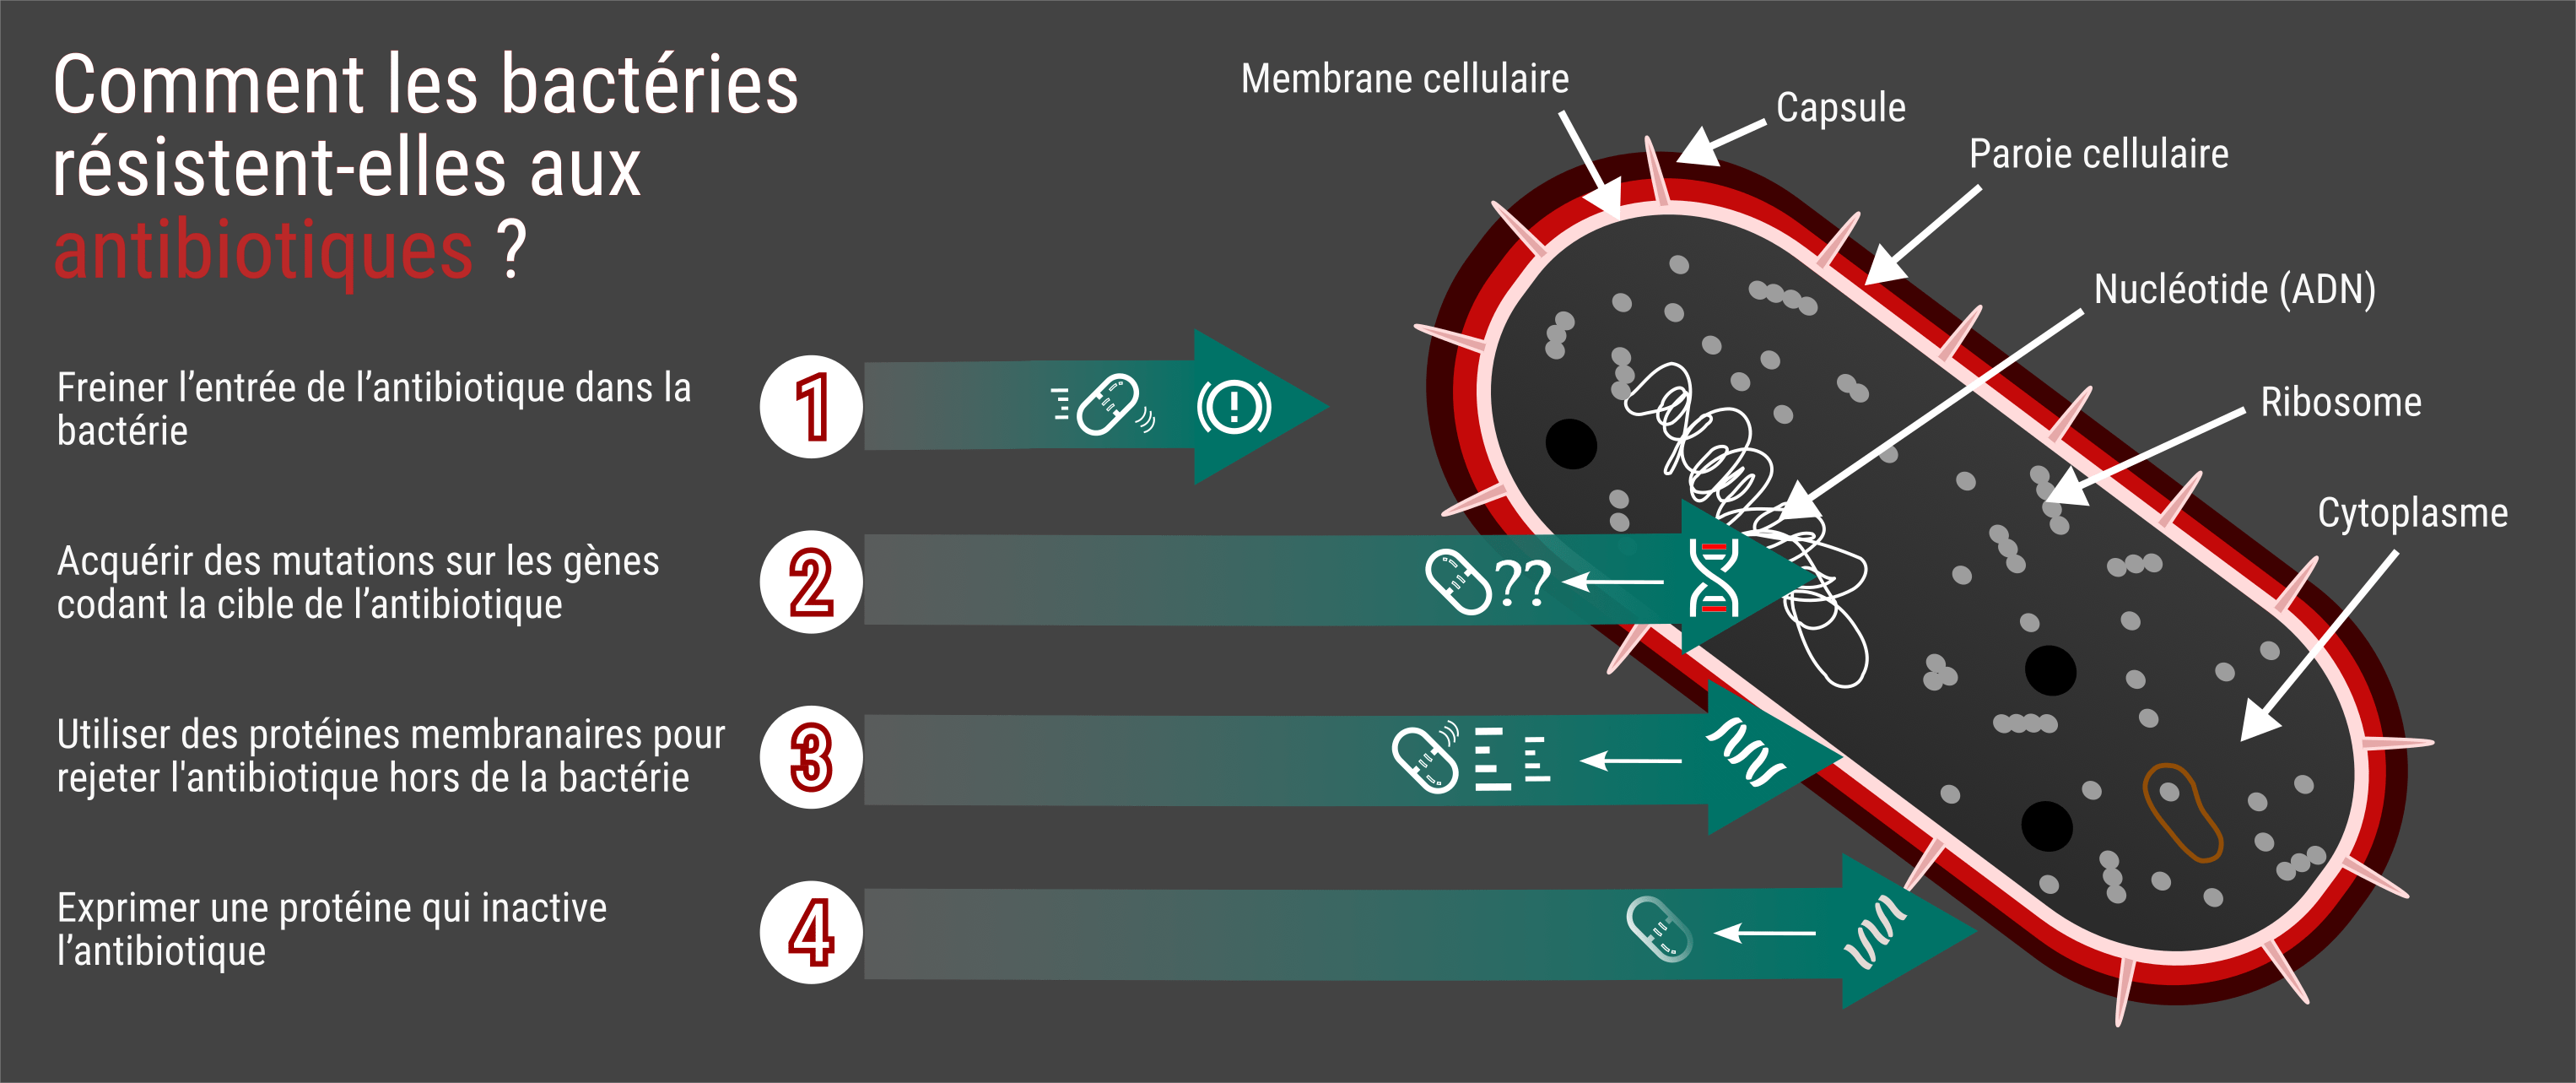 Mécanismes de résistance des bactéries. © Samuel Belaud